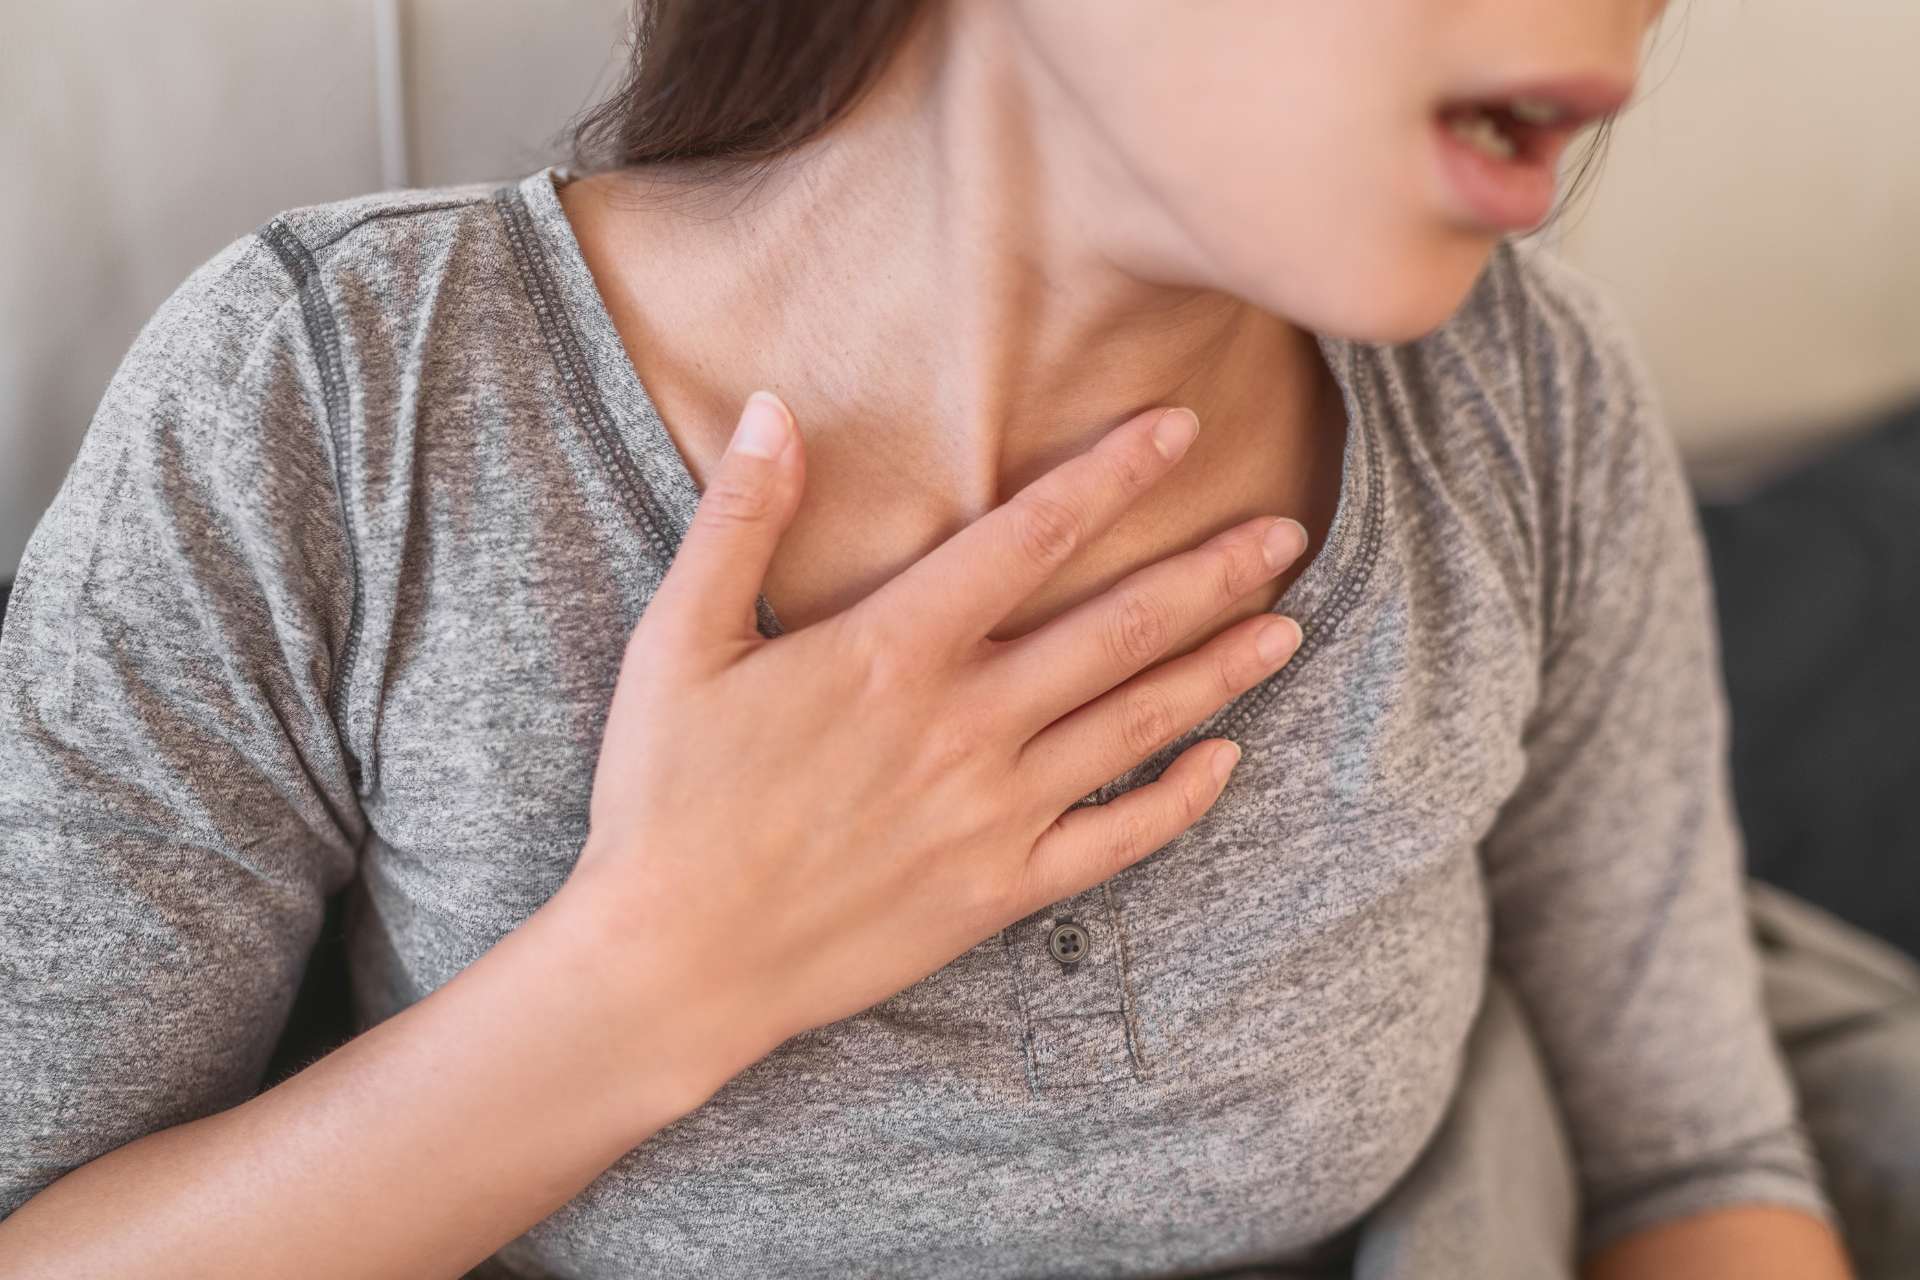 Daži kuņģa un sirds sindroma simptomi var būt sirdsklauves, sasprindzinājums krūtīs un paātrināta sirdsdarbība